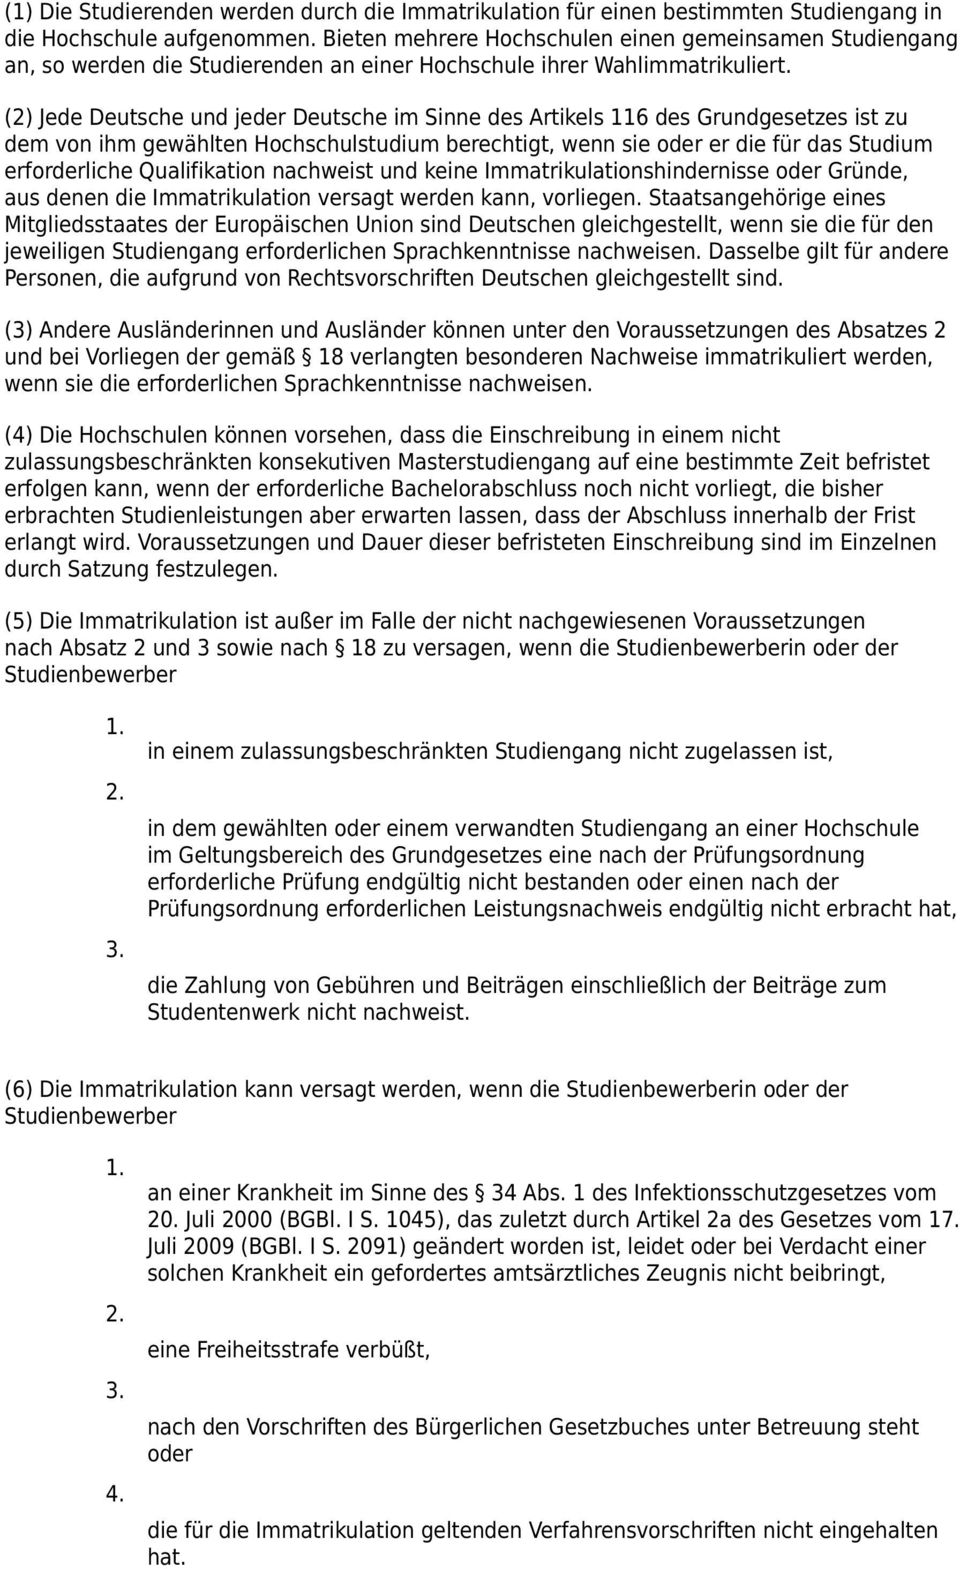 (2) Jede Deutsche und jeder Deutsche im Sinne des Artikels 116 des Grundgesetzes ist zu dem von ihm gewählten Hochschulstudium berechtigt, wenn sie oder er die für das Studium erforderliche